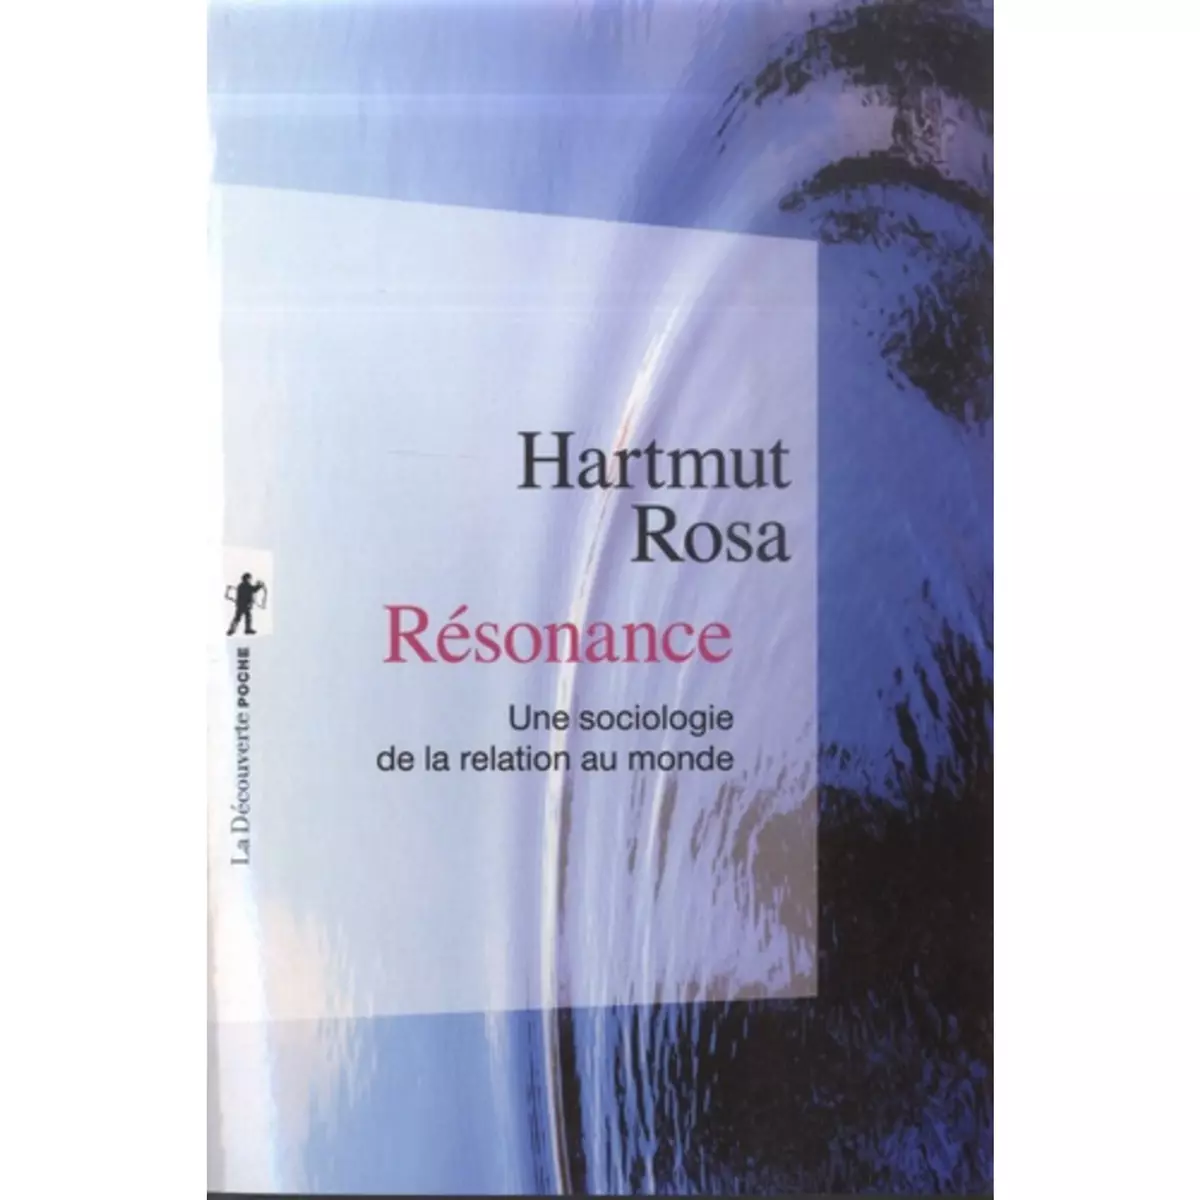  RESONANCE. UNE SOCIOLOGIE DE LA RELATION AU MONDE, Hartmut Rosa